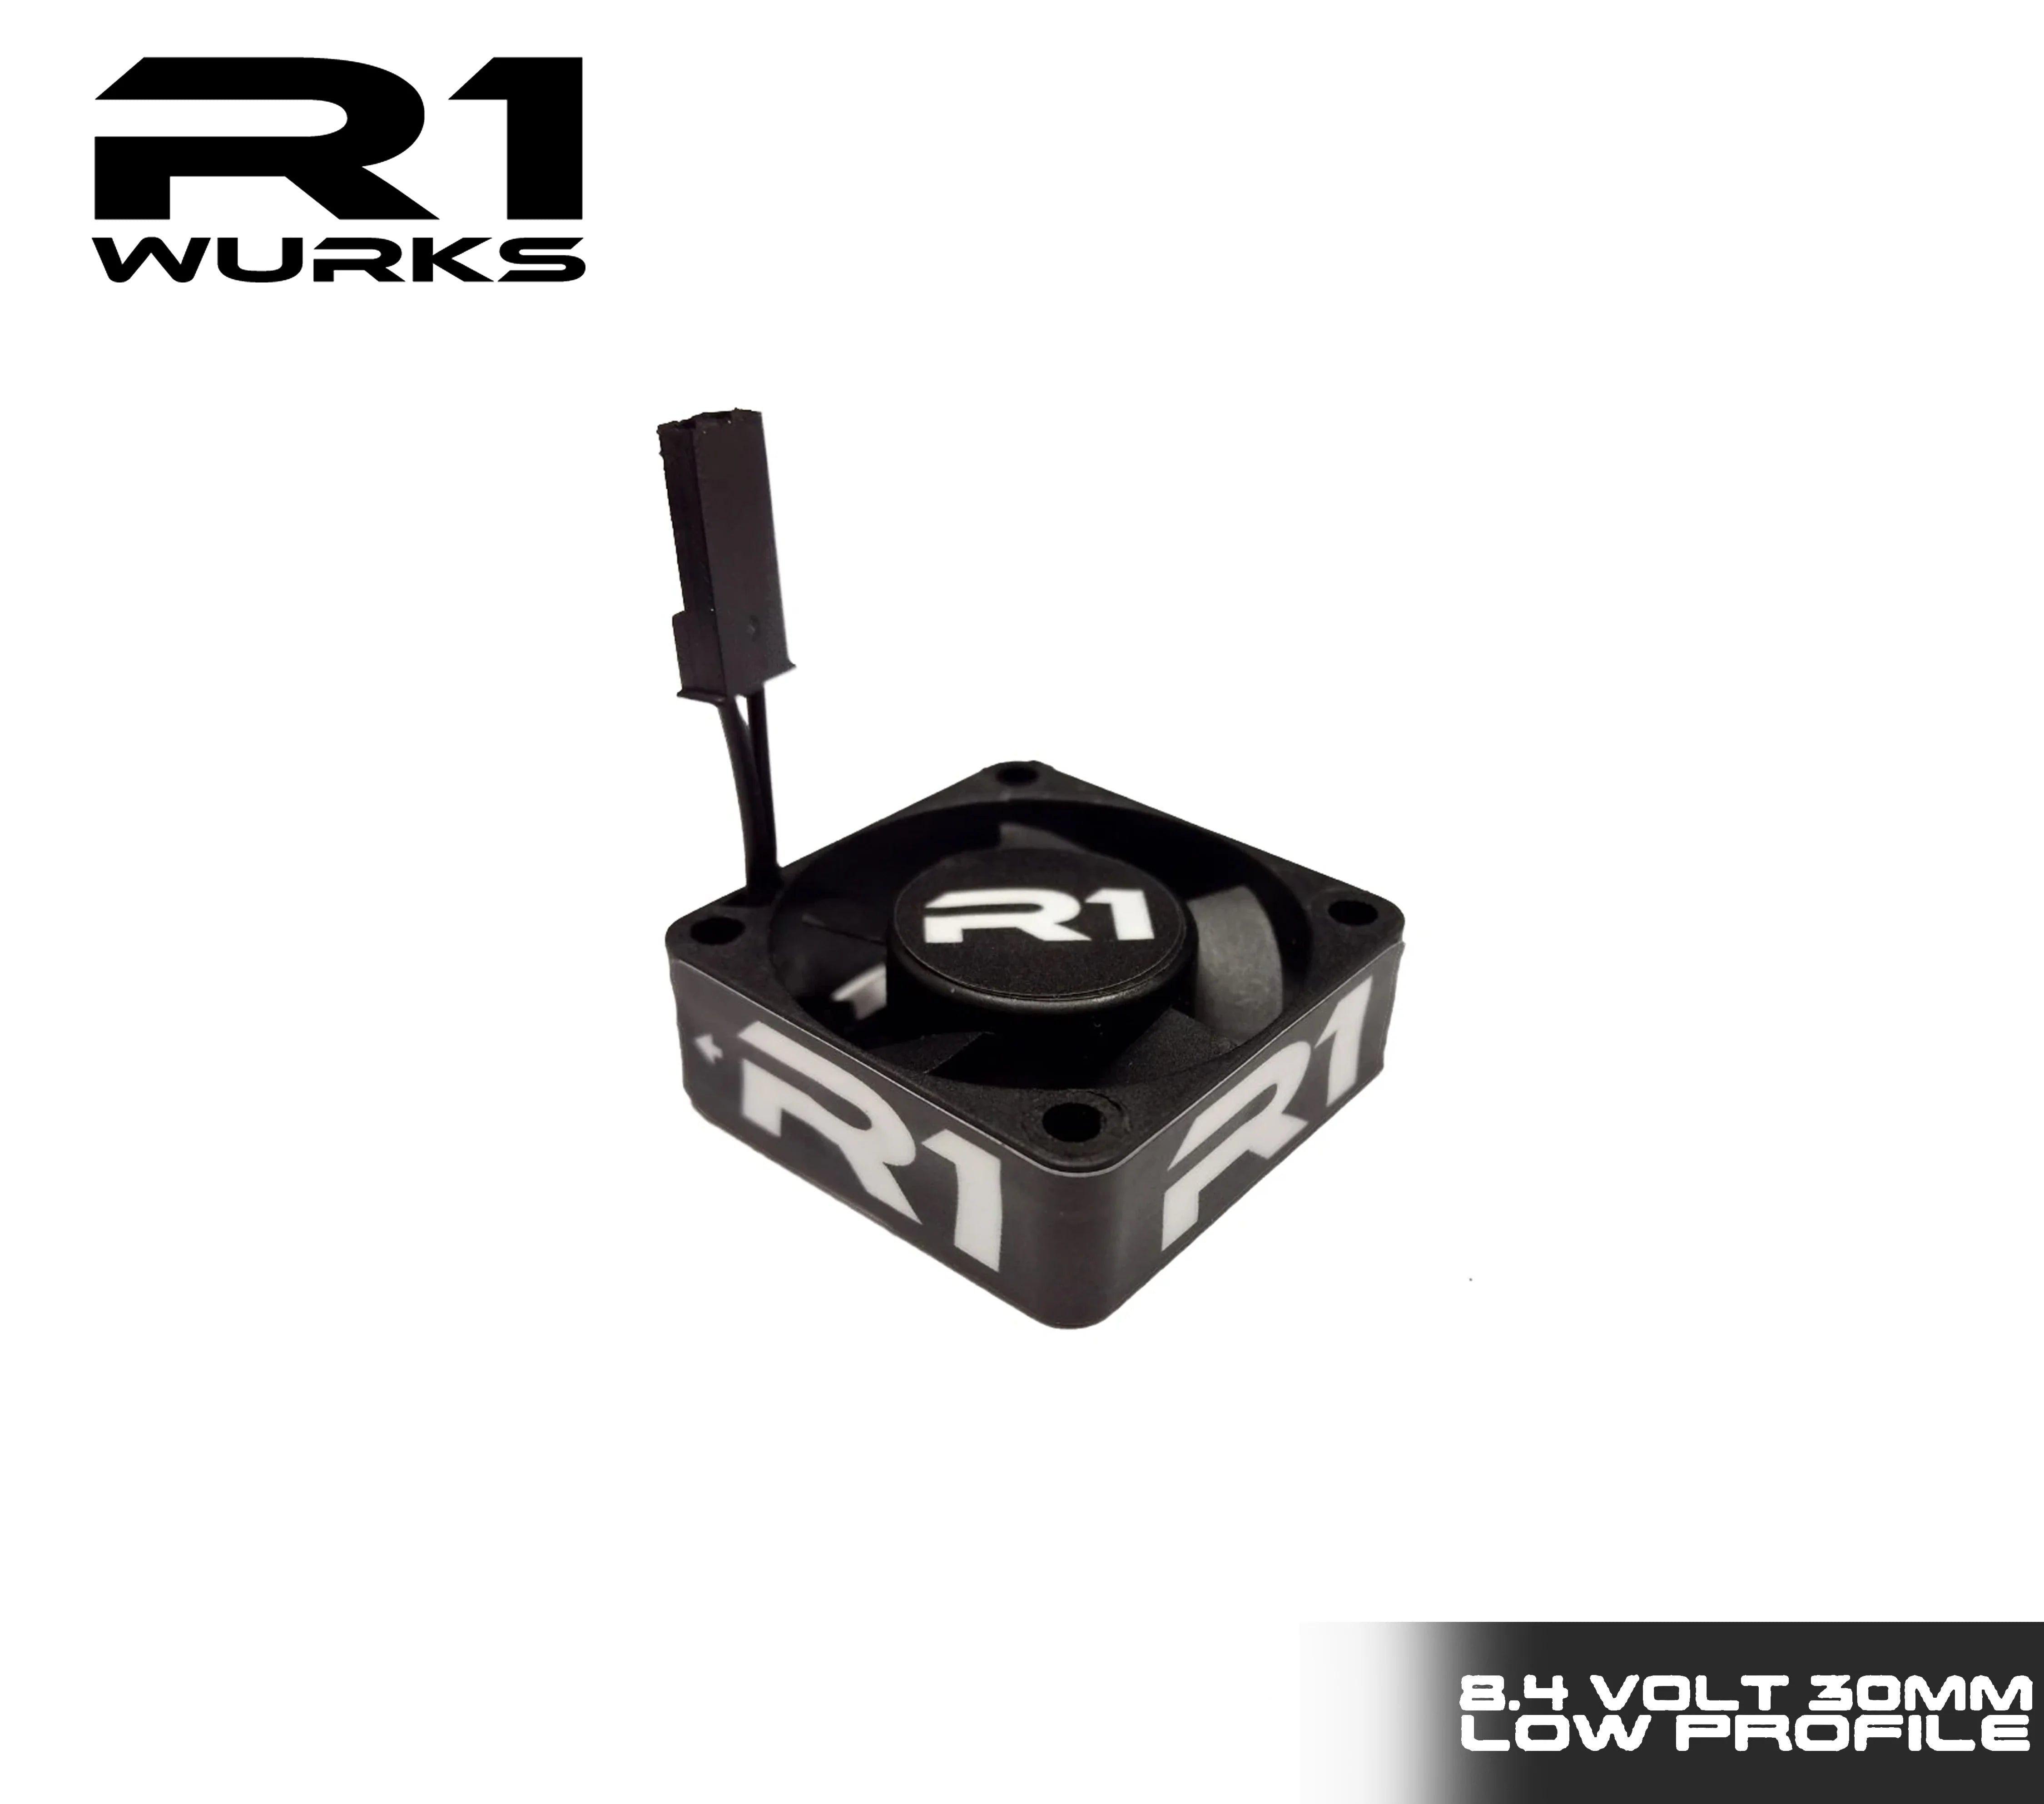 R1 Wurks 060006 30mm 8.4V Low Profile Premium Fan